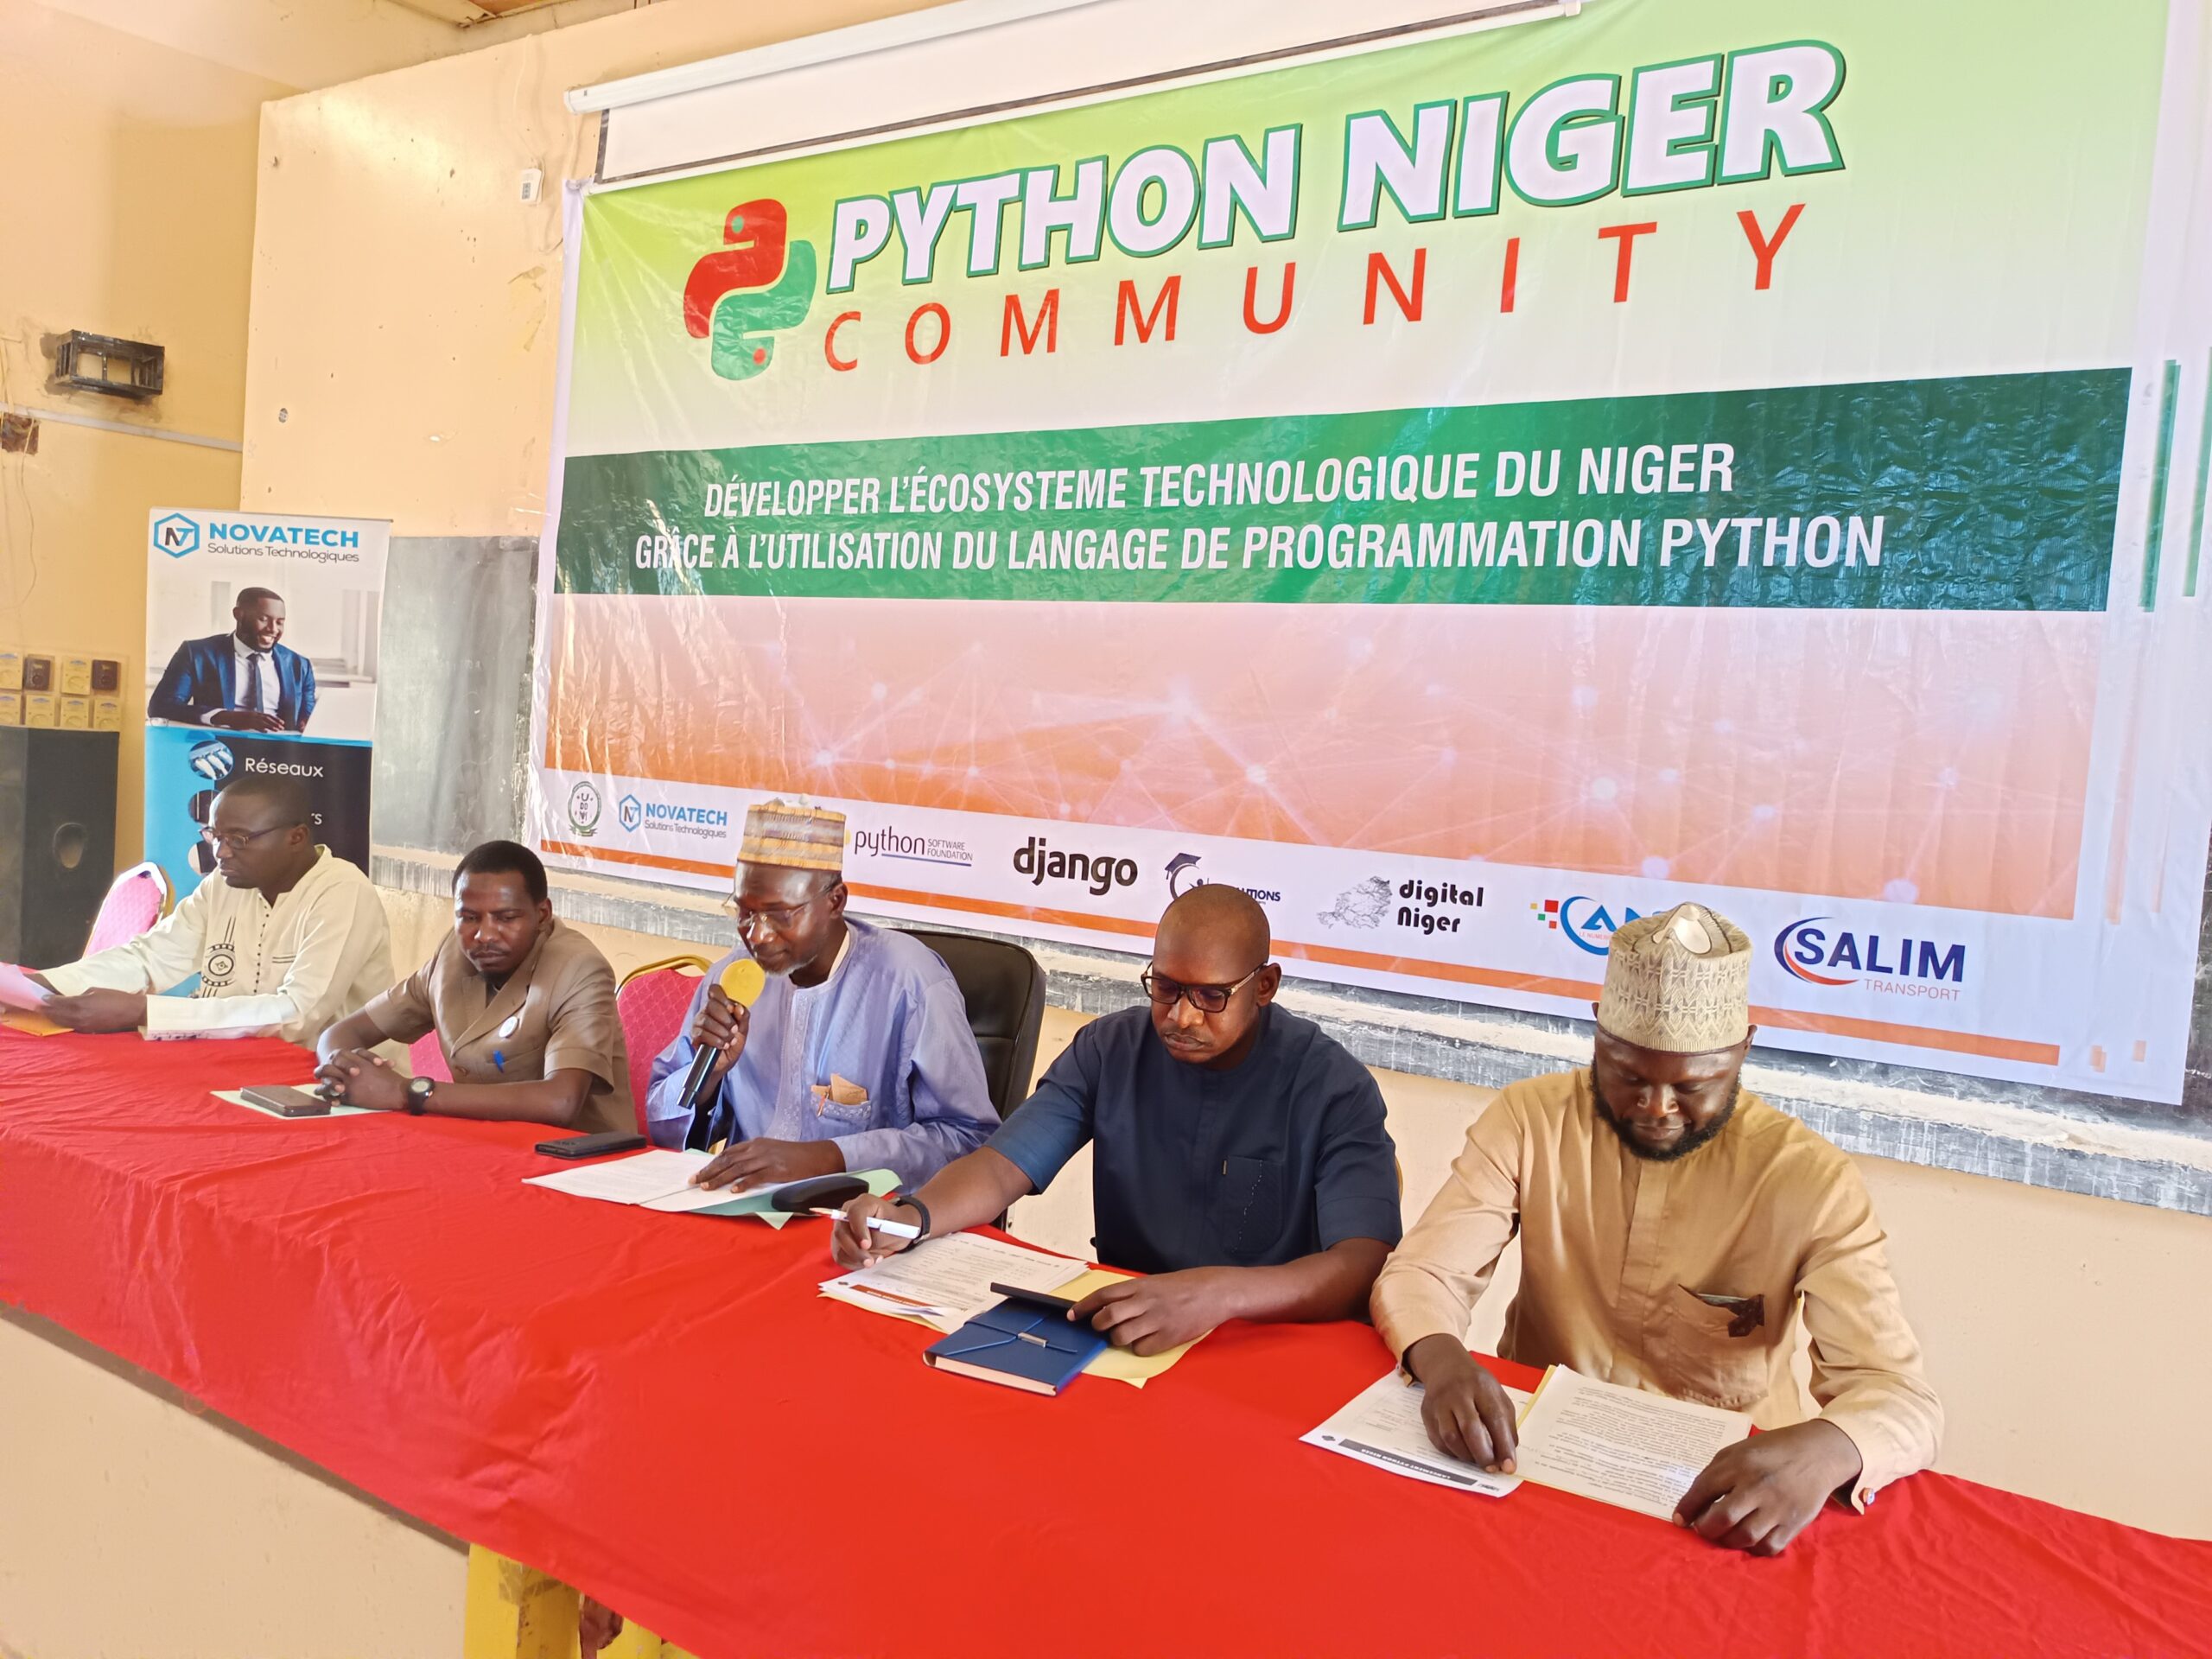 Lancement officiel de la communauté Python Niger